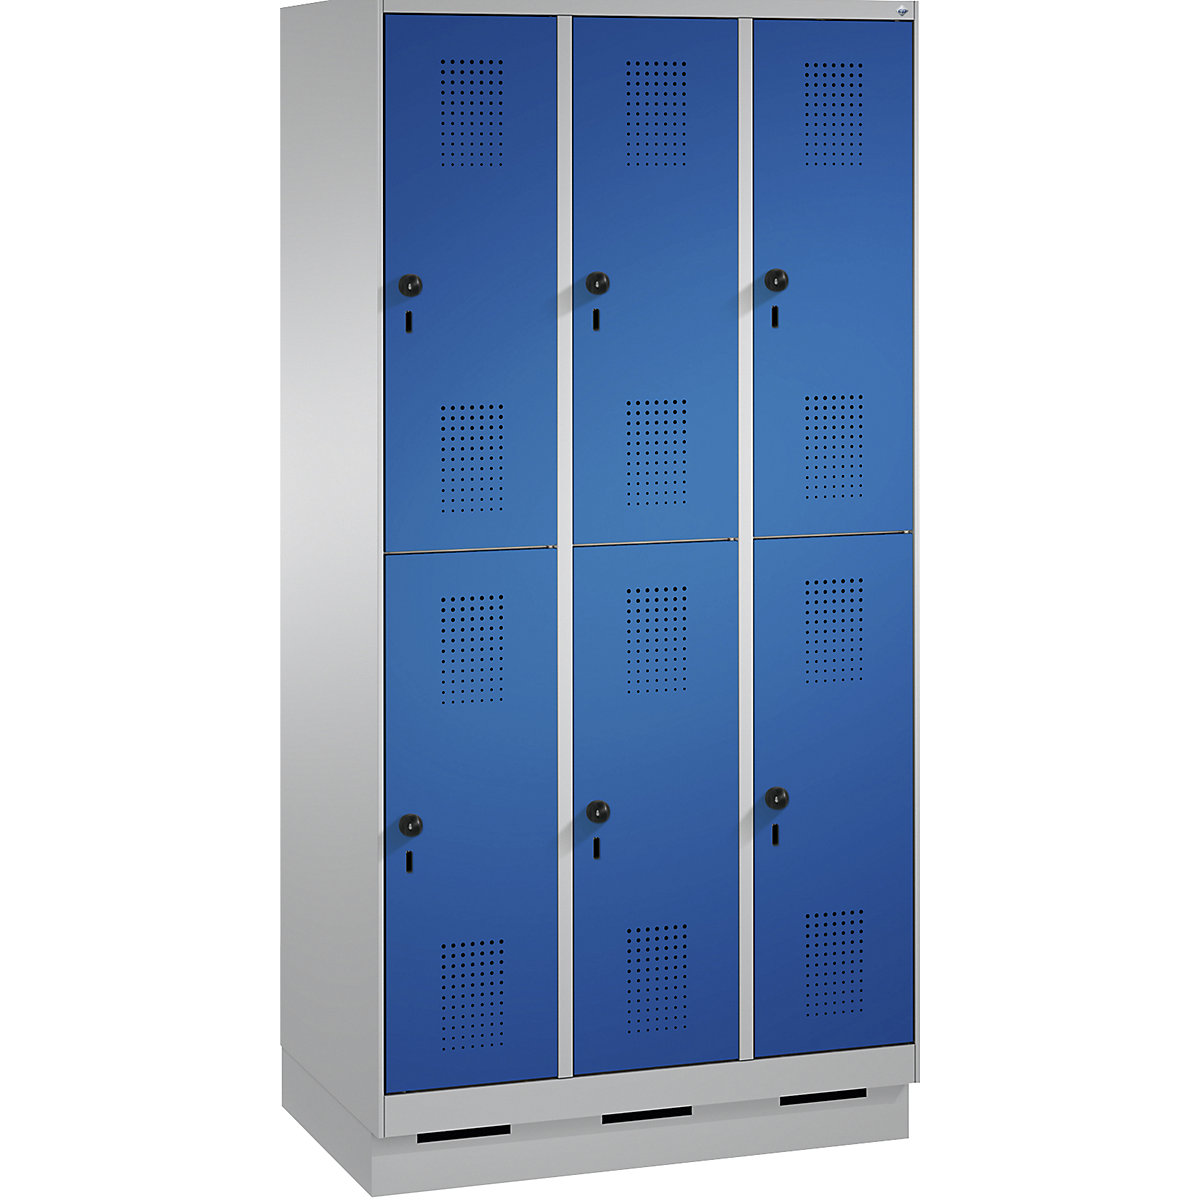 Penderie sur socle EVOLO à deux étages – C+P, 3 compartiments, 2 casiers chacun, largeur compartiments 300 mm, aluminium / bleu gentiane-13